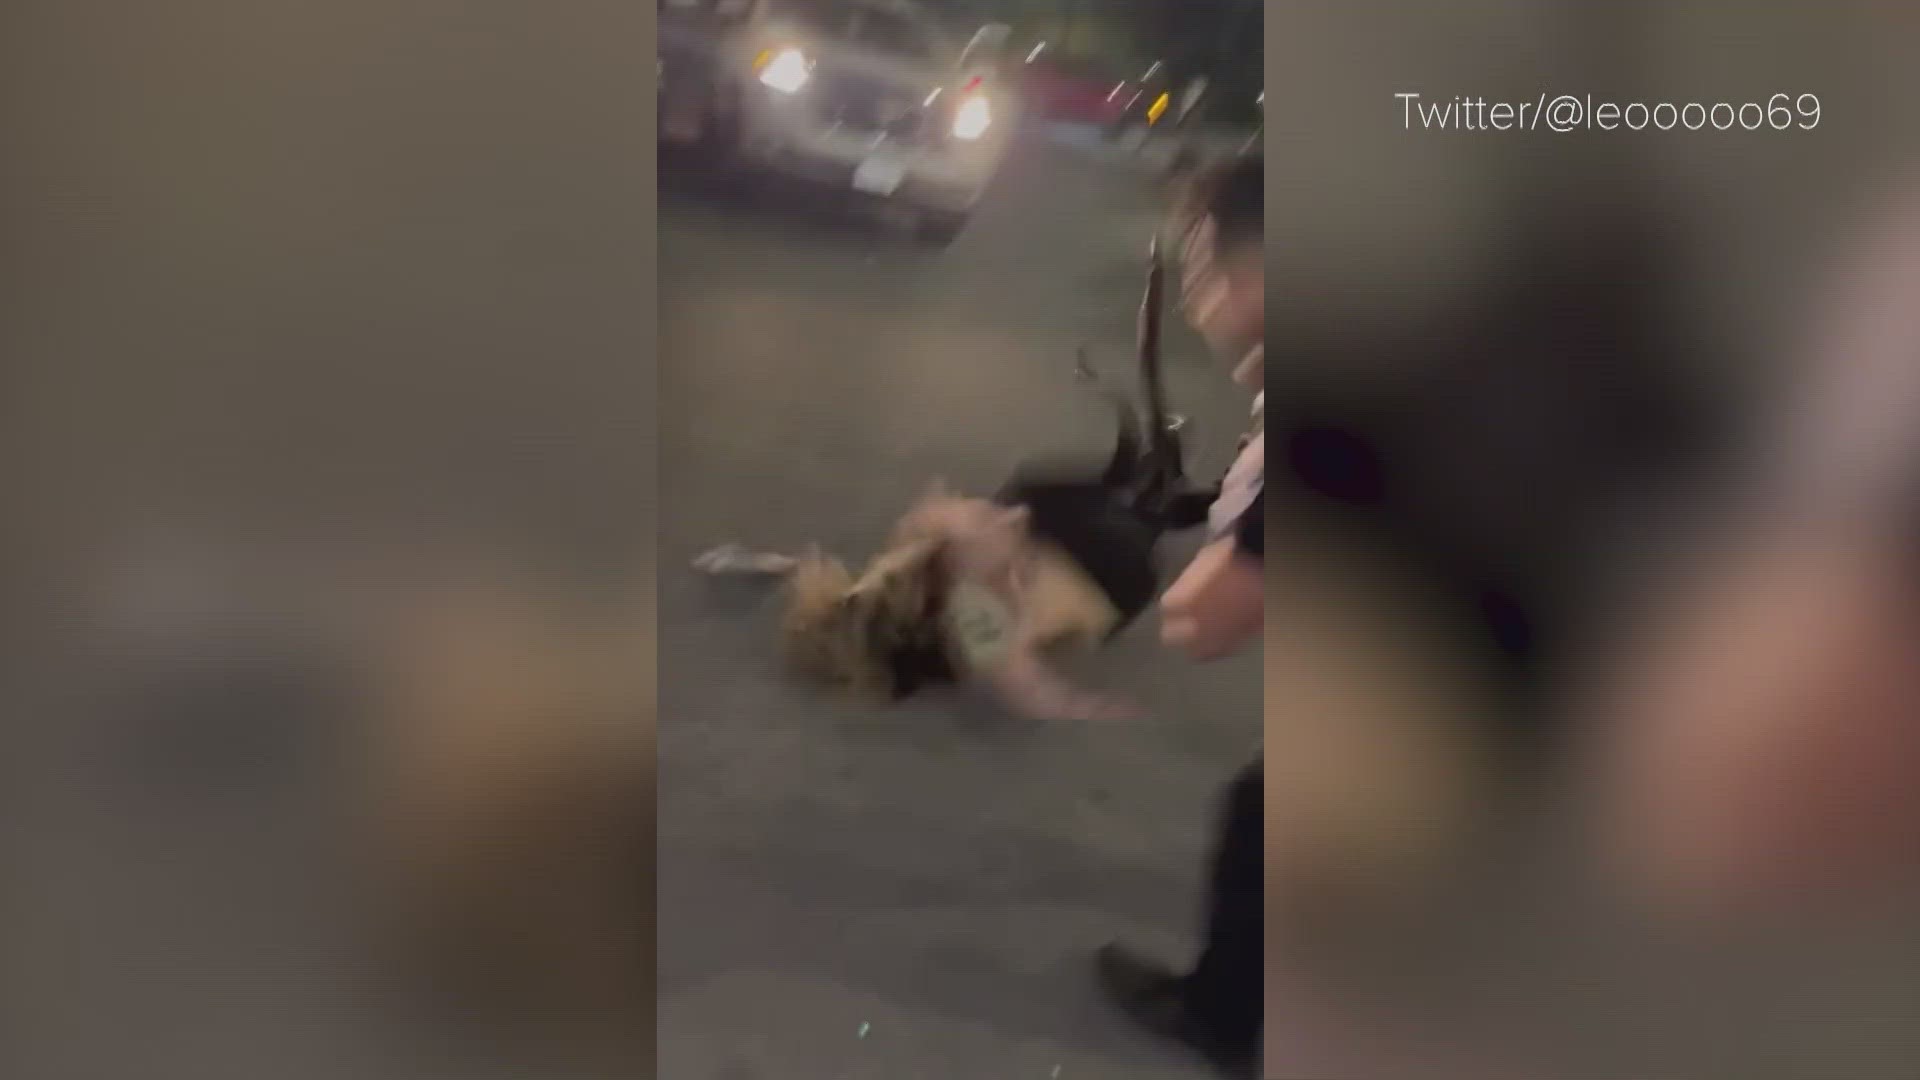 San Antonio brawl Video shows security slamming woman to ground kens5 image